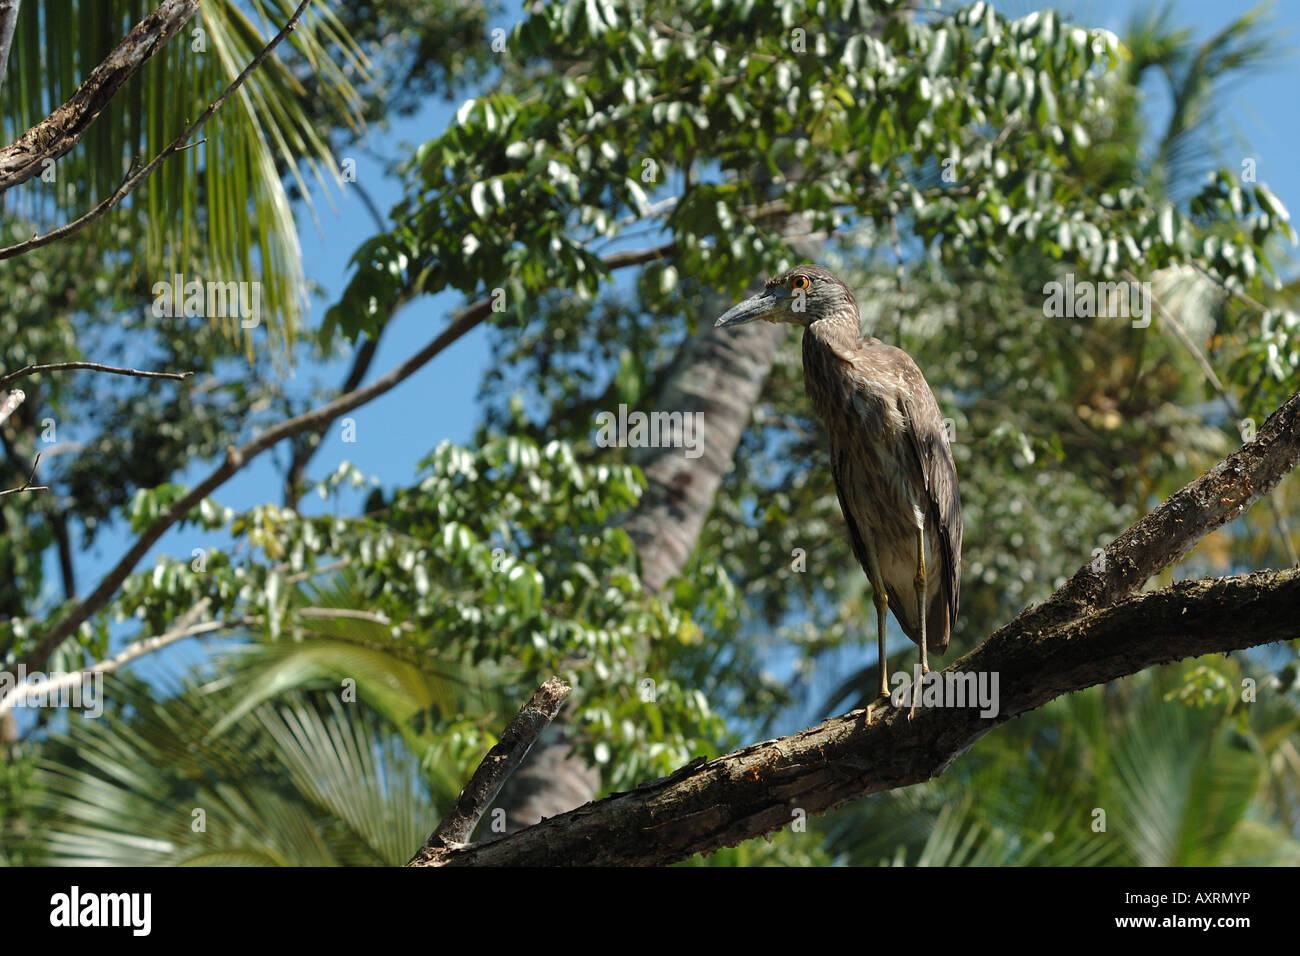 young heron giovane airone Tortughero costa caraibica Costarica rain forest foresta pluviale foresta tropicale Stock Photo